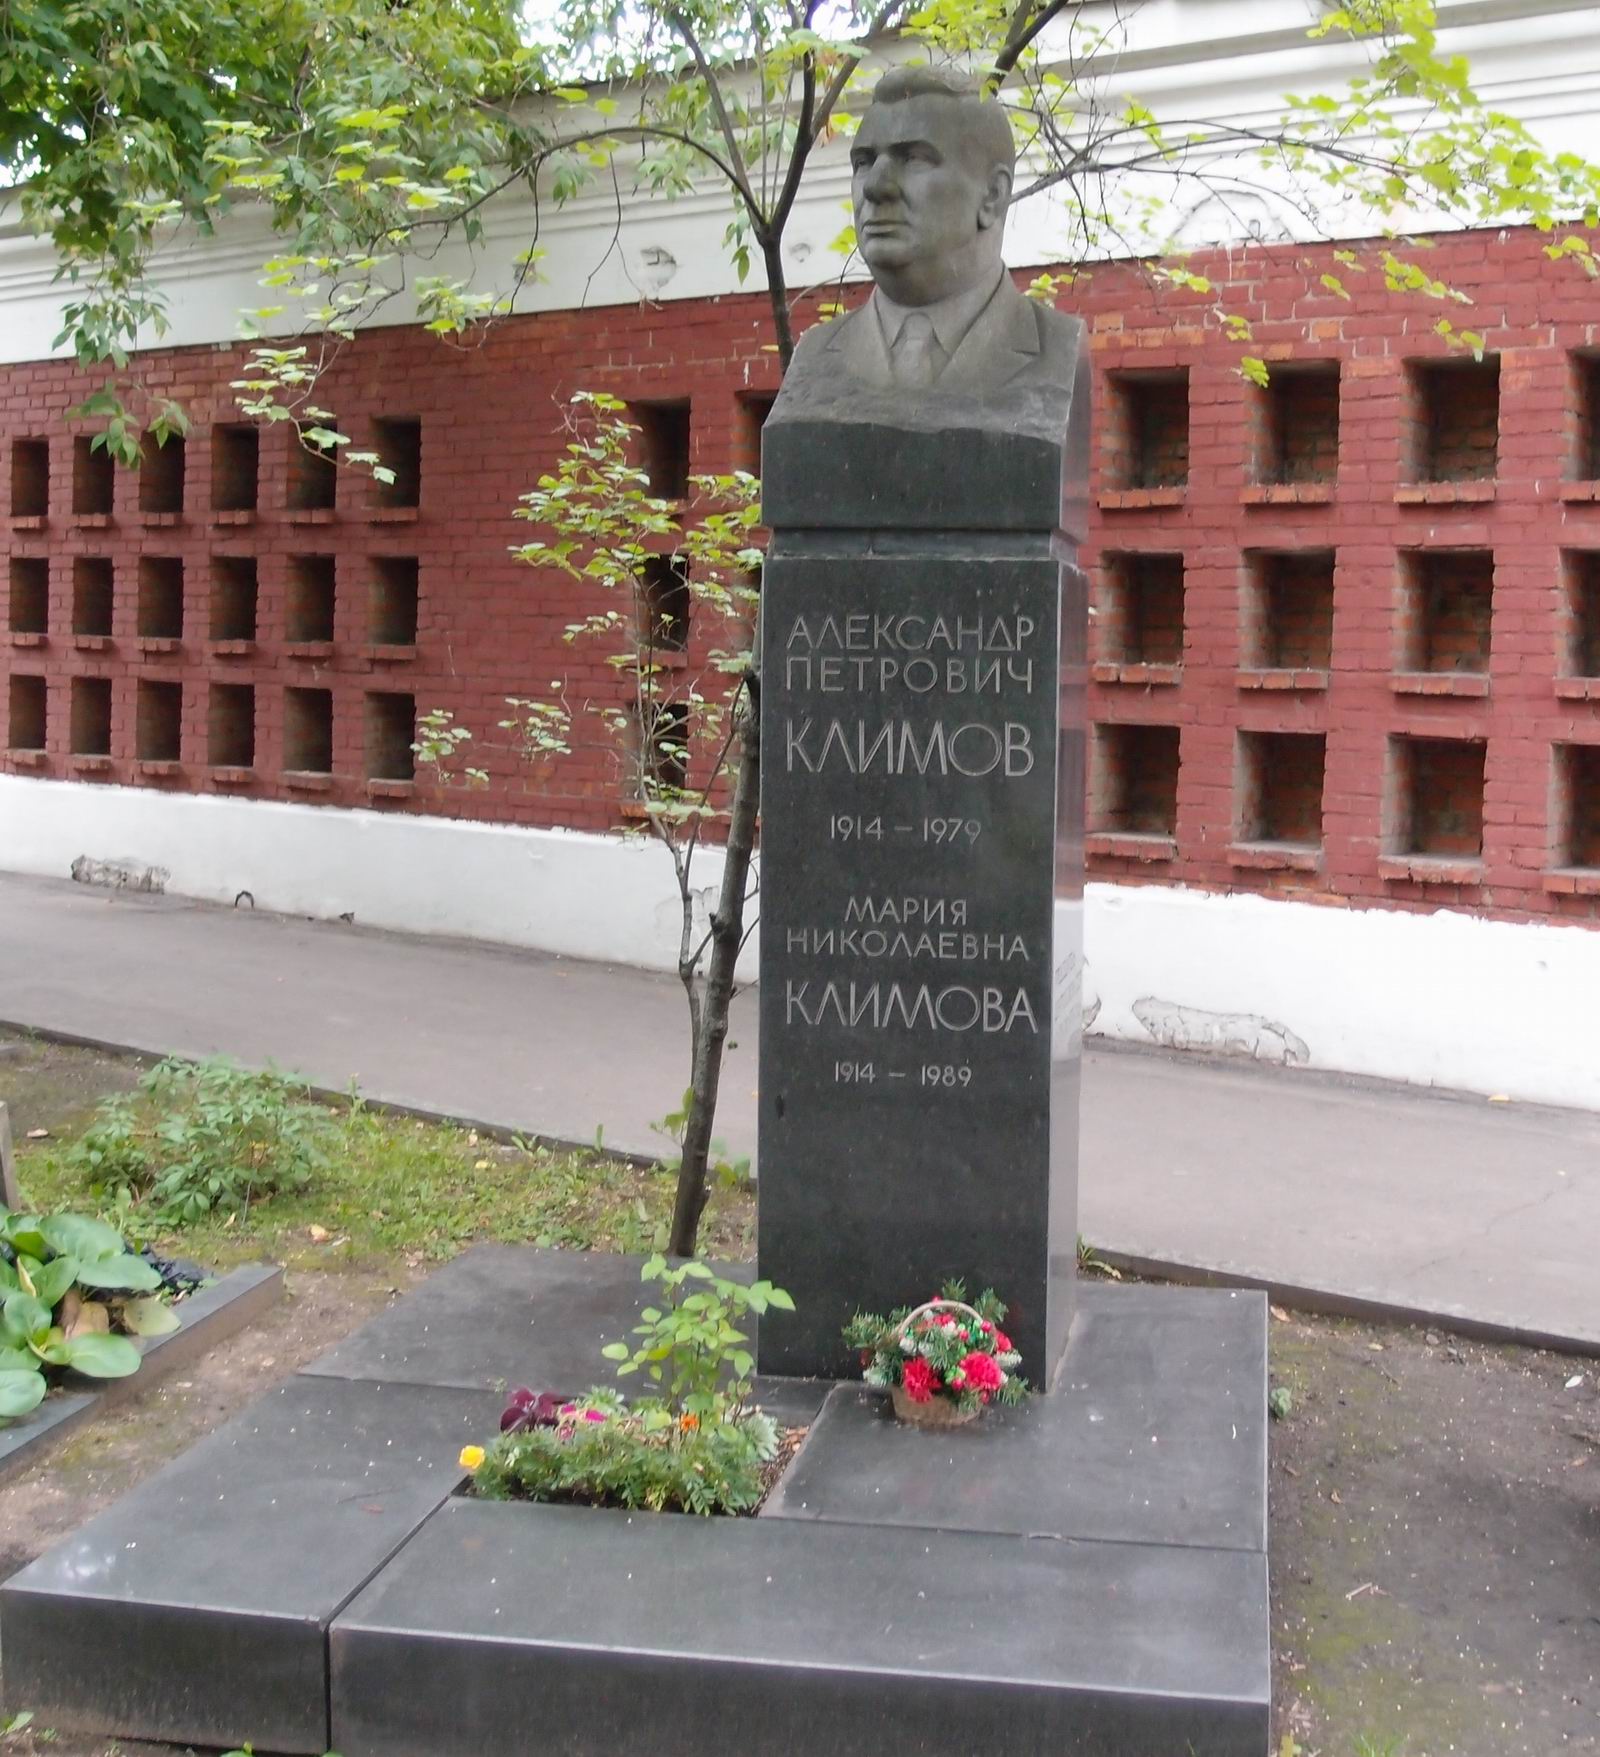 Памятник на могиле Климова А.П. (1914-1979), ск. А.Тюренков, арх. Г.Гаврилов, на Новодевичьем кладбище (9-5-14).